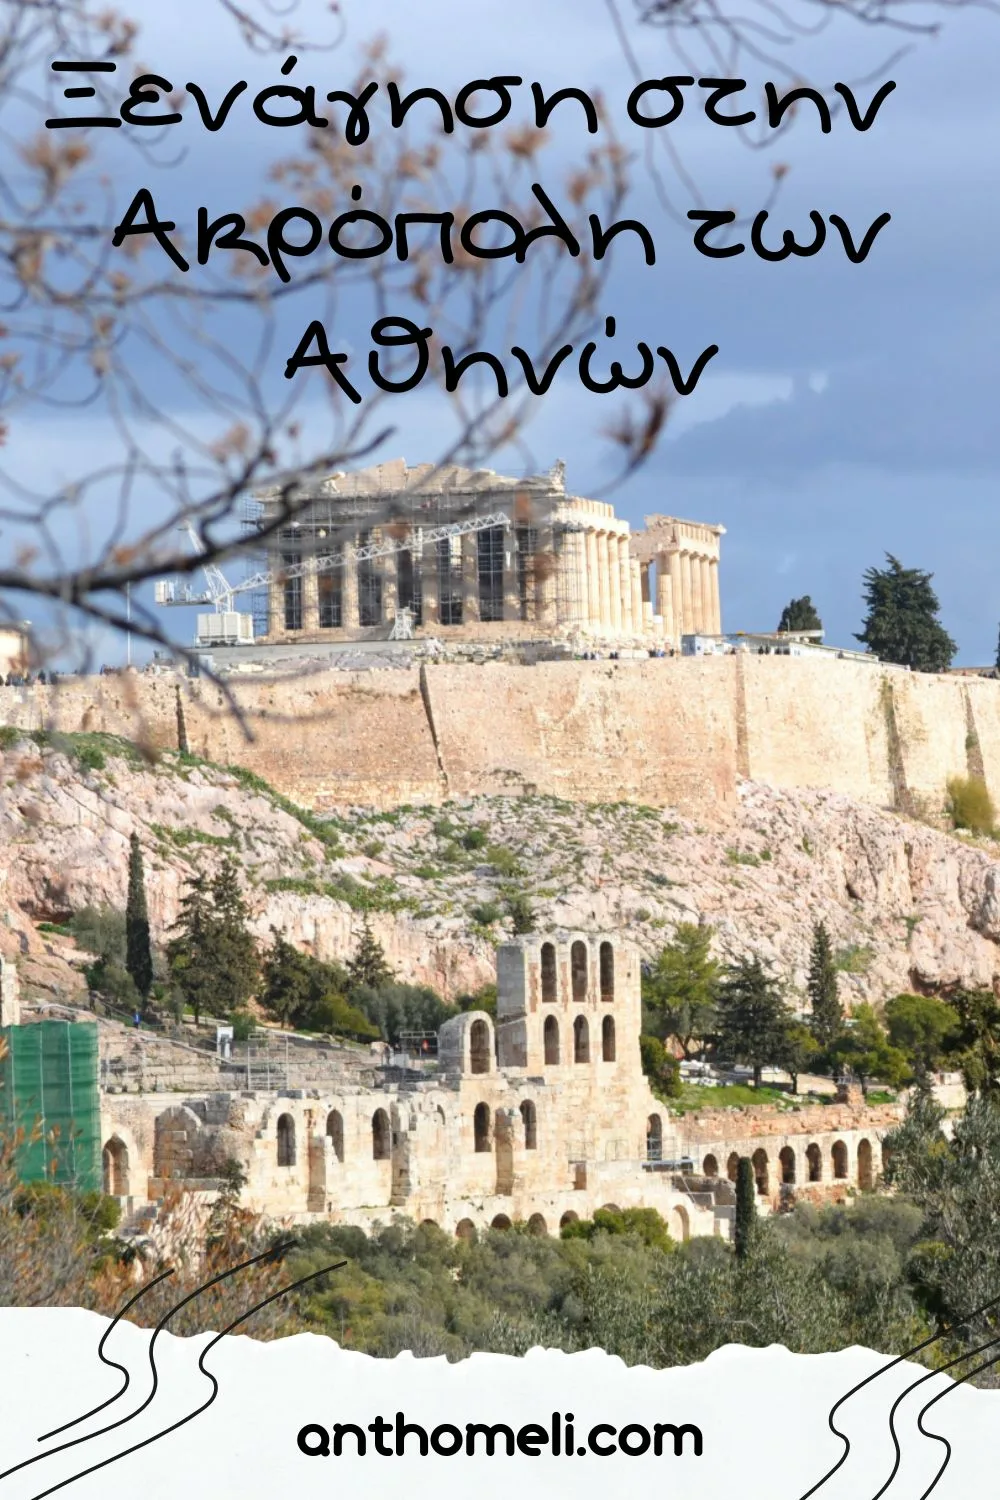 Ξενάγηση στην Ακρόπολη των Αθηνών, στον Παρθενώνα, στο Ηρώδειο, στο νέο Μουσείο της Ακρόπολης και στα γραφικά Αναφιώτικα.